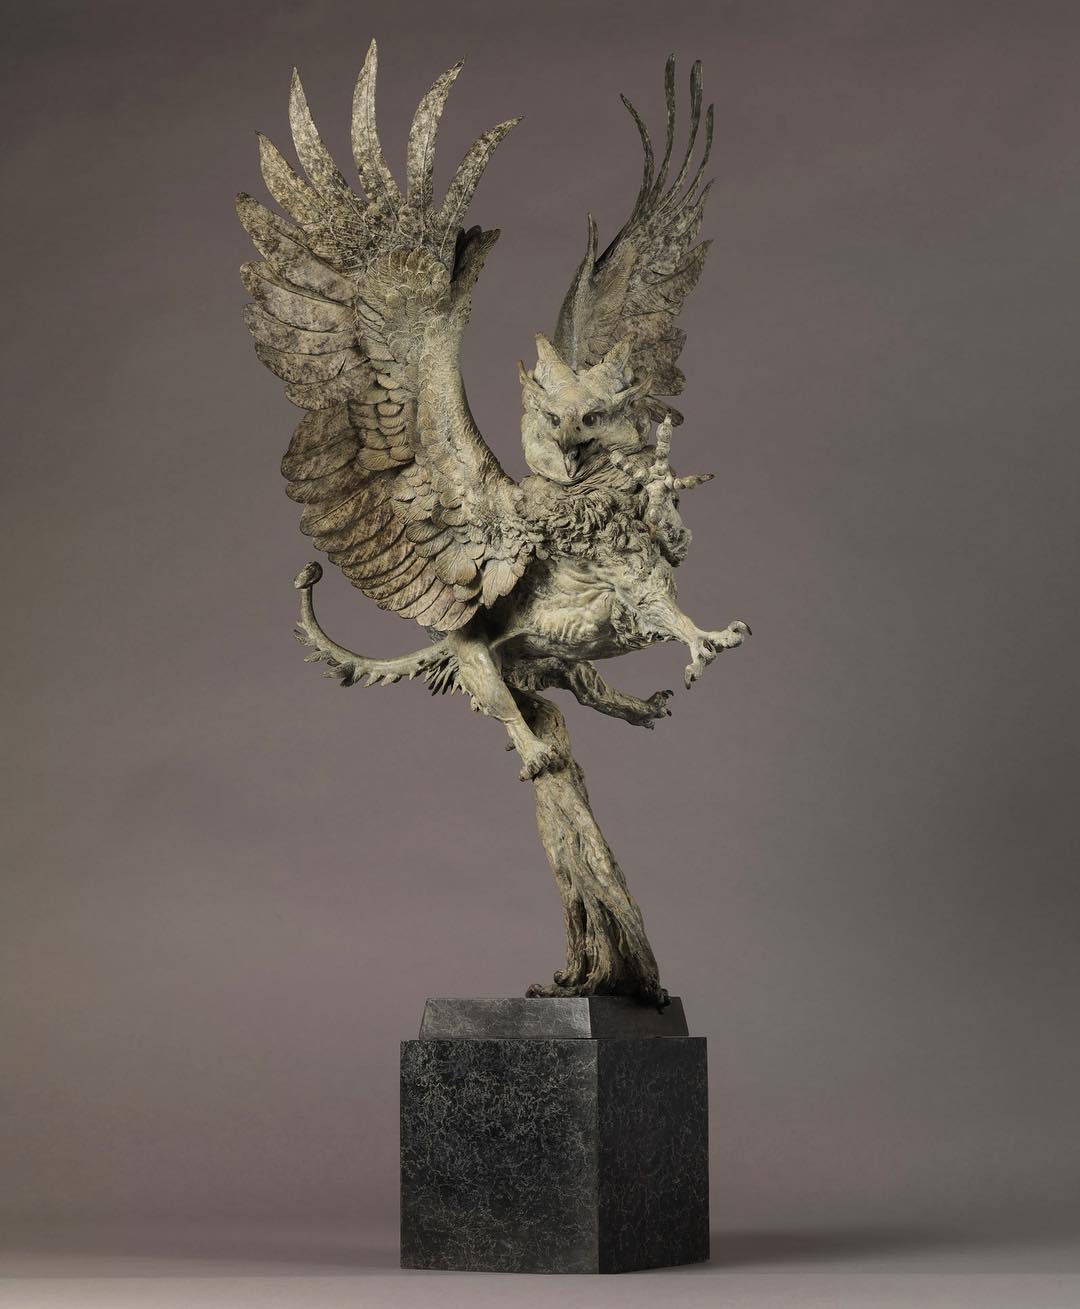 Exquisite Wildlife Bronze Sculptures By Nick Bibby (8)